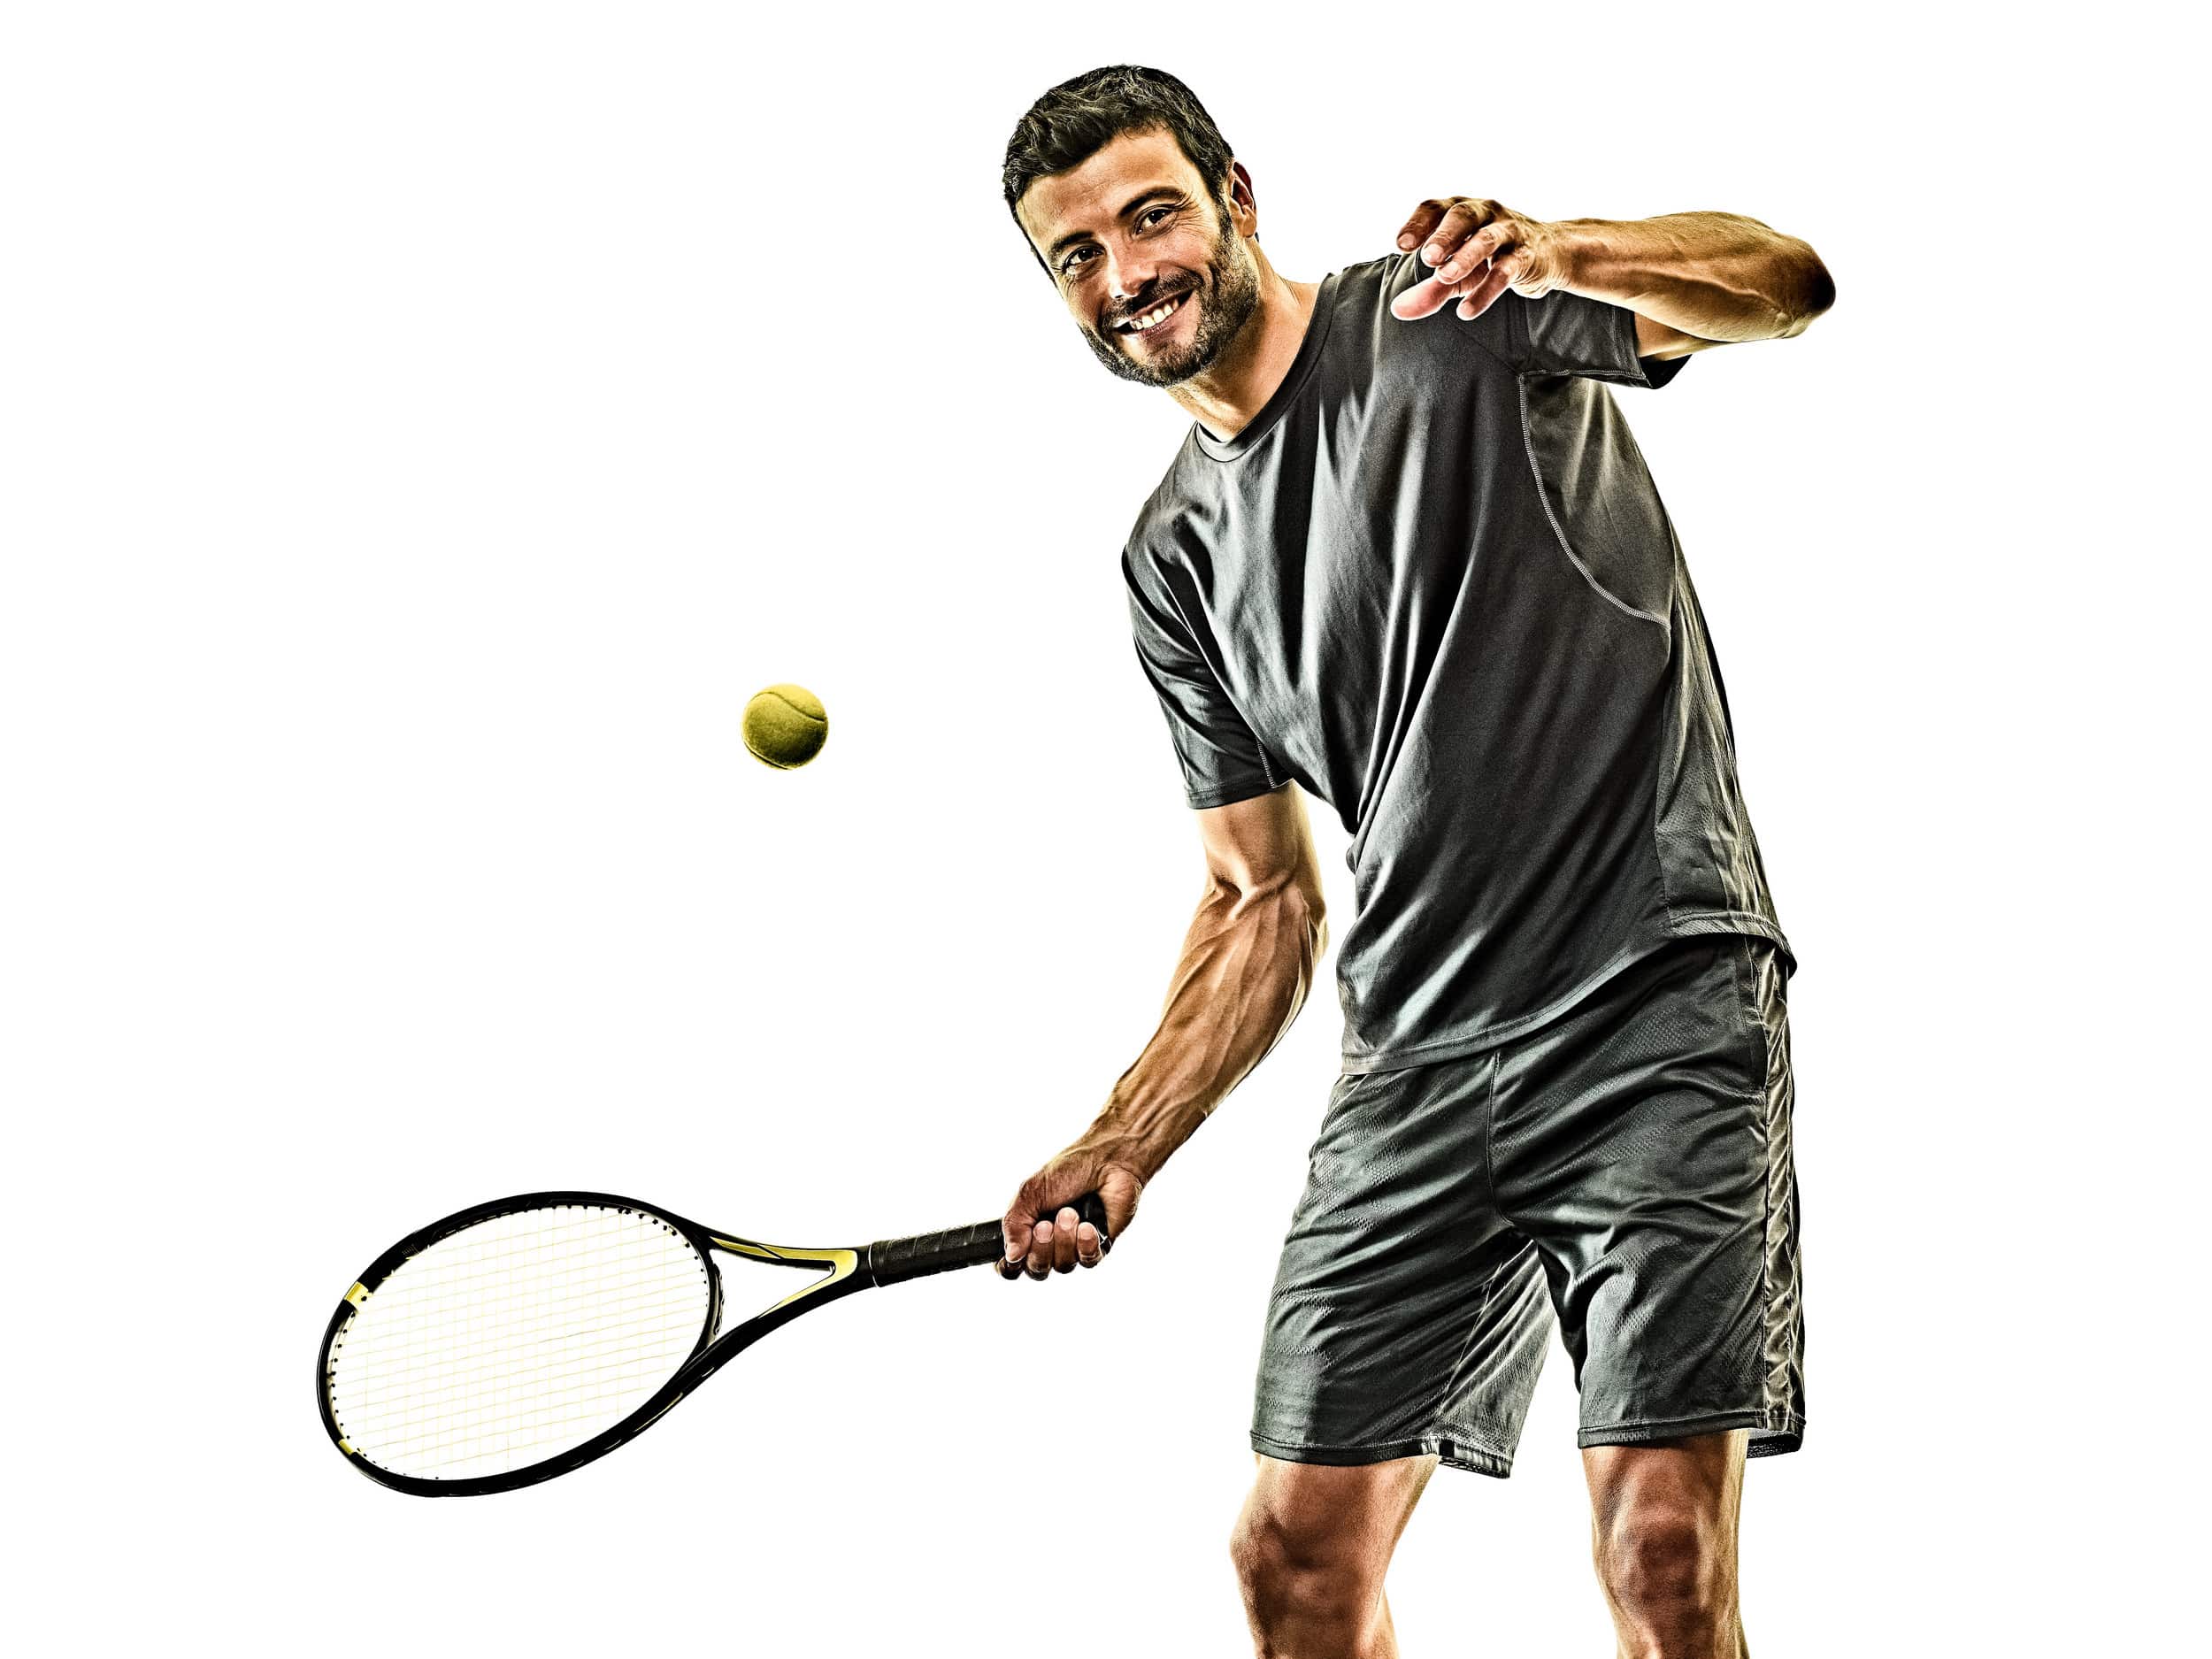 Tennis 2 homepage